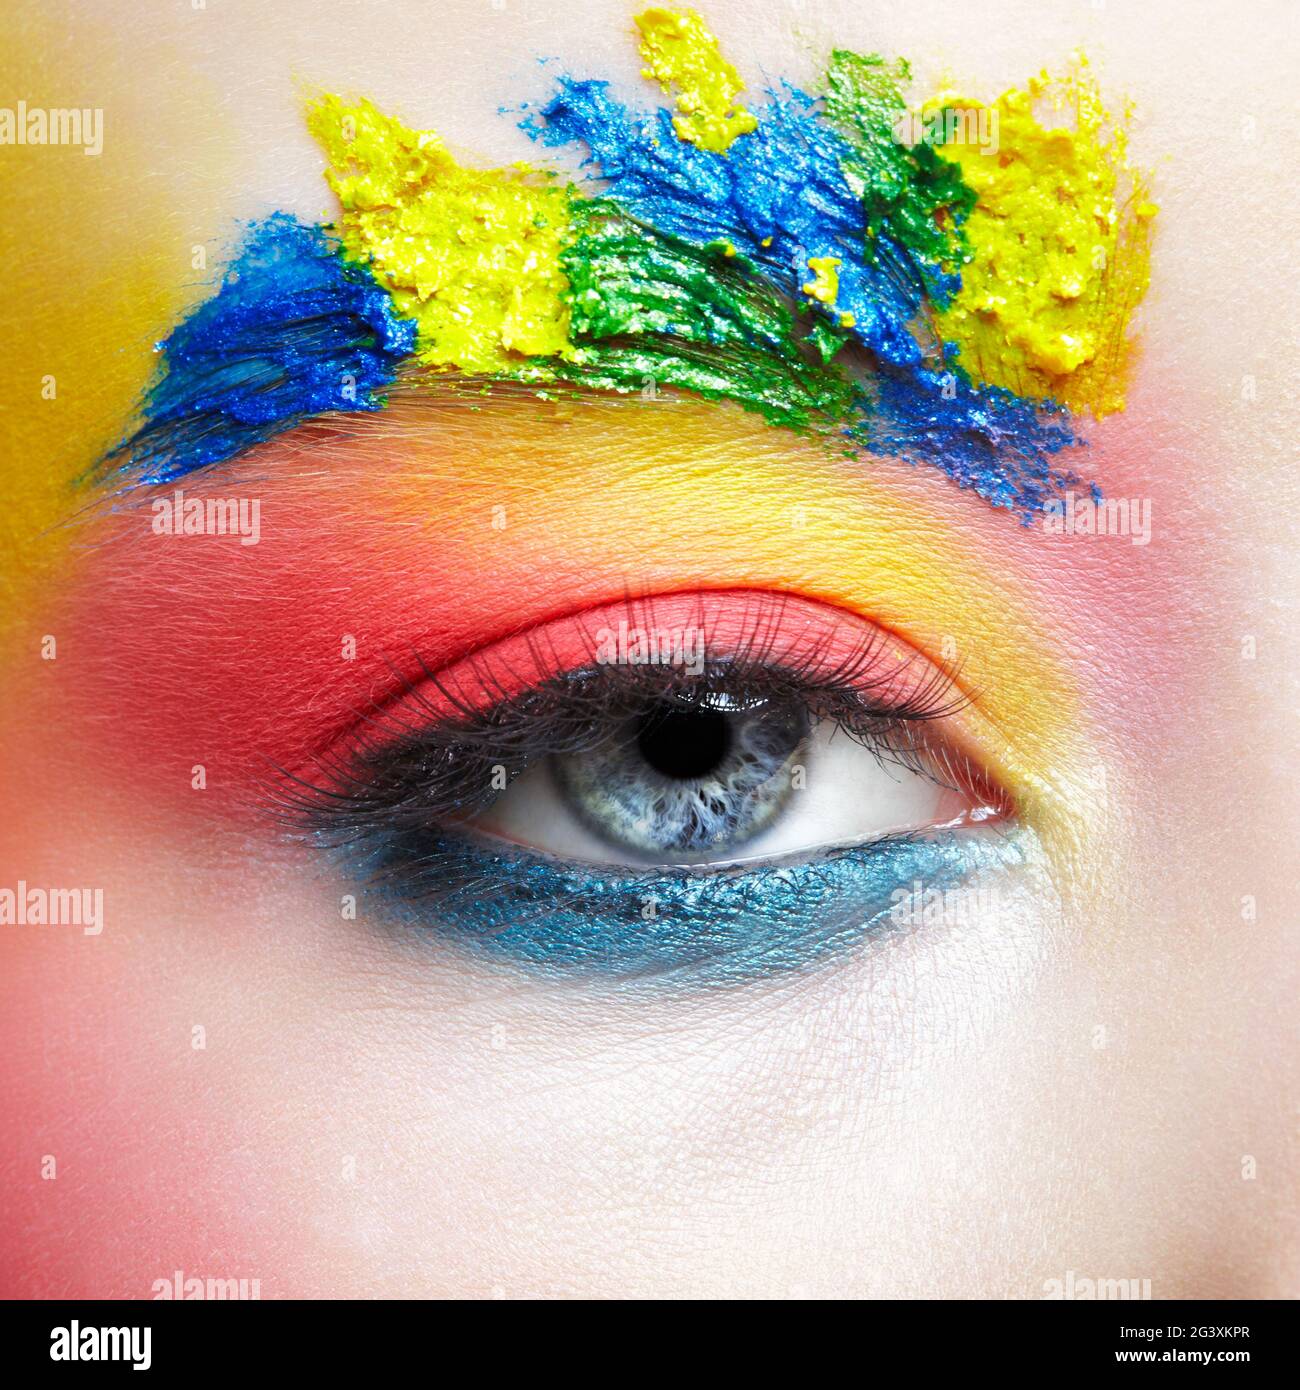 Gros plan de l'œil d'une jeune fille avec maquillage artistique inhabituel. Banque D'Images